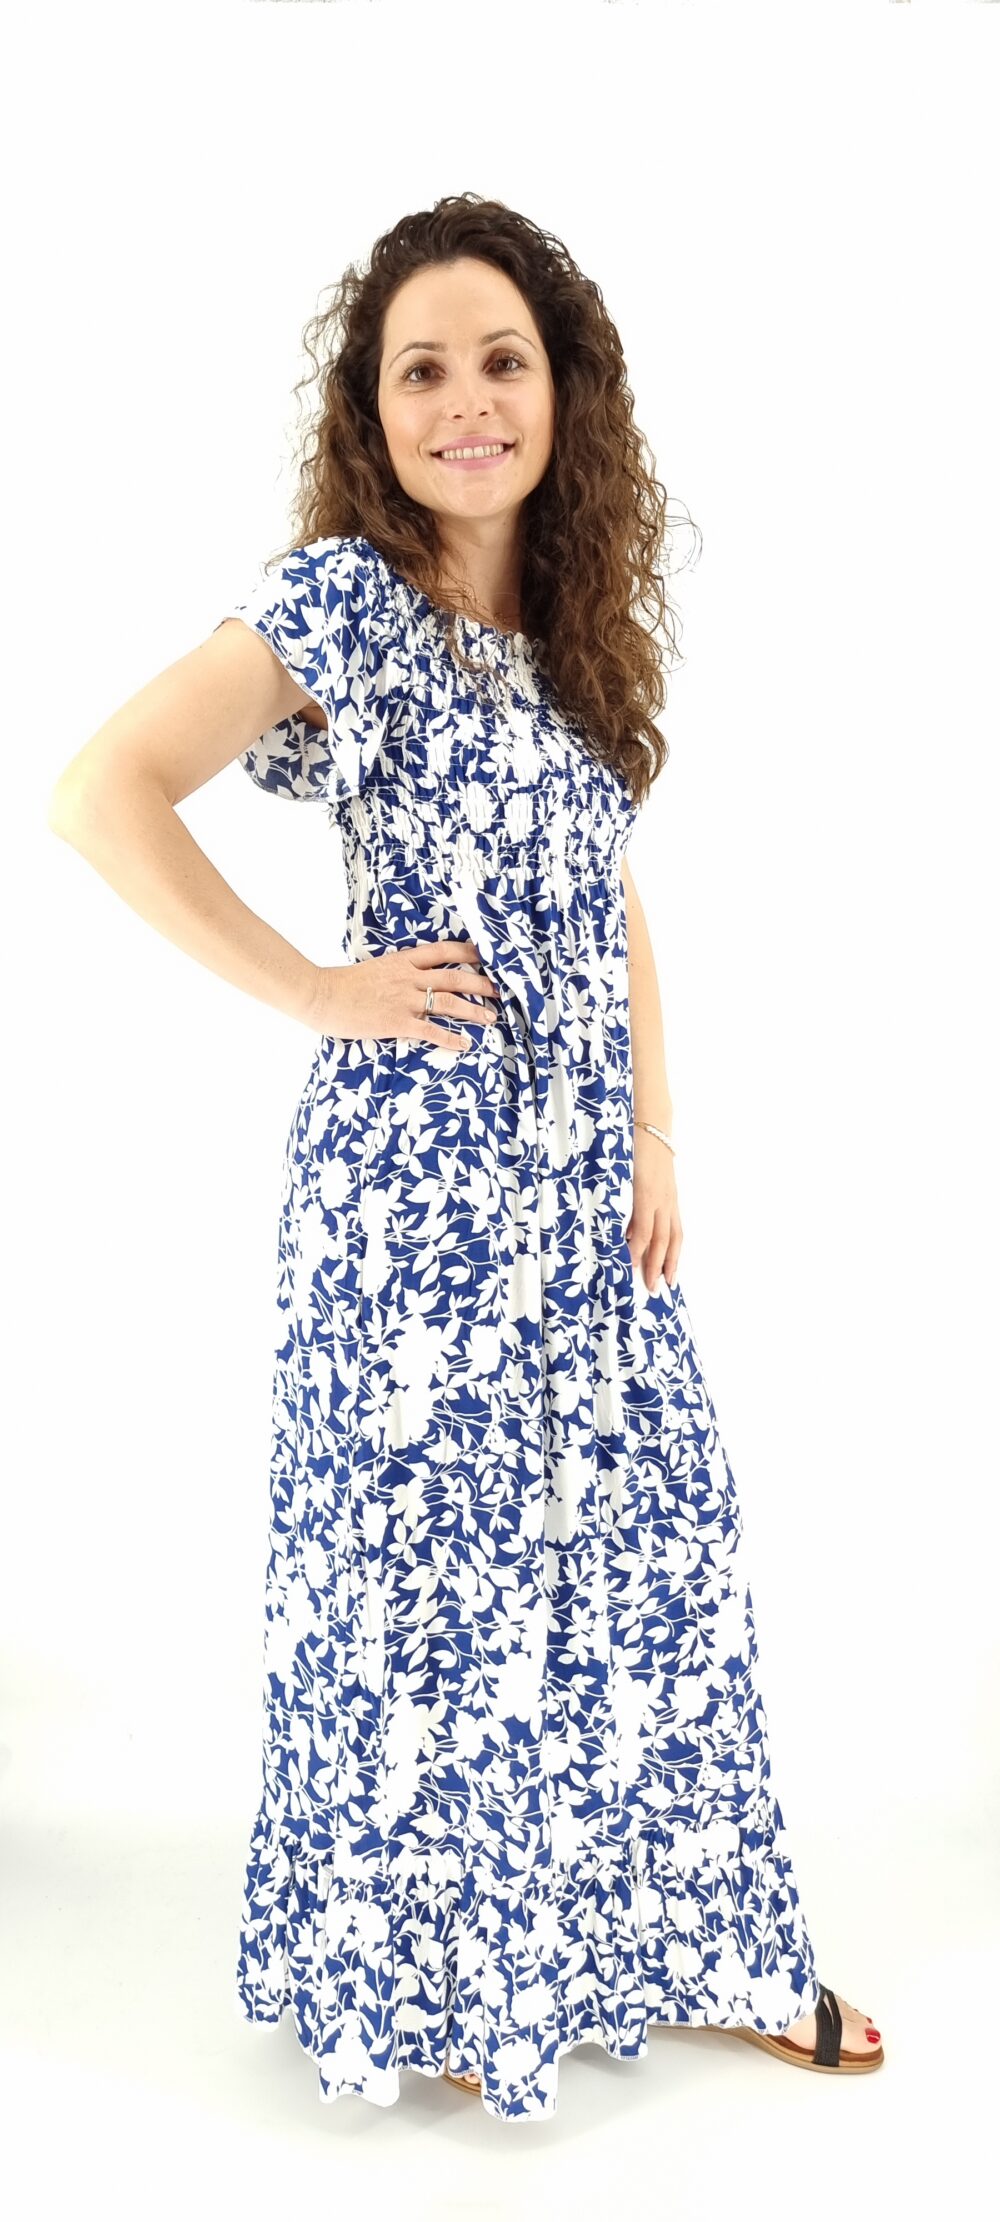 Φόρεμα μακρύ φλοράλ με σφιγγοφωλιά άσπρο μπλε